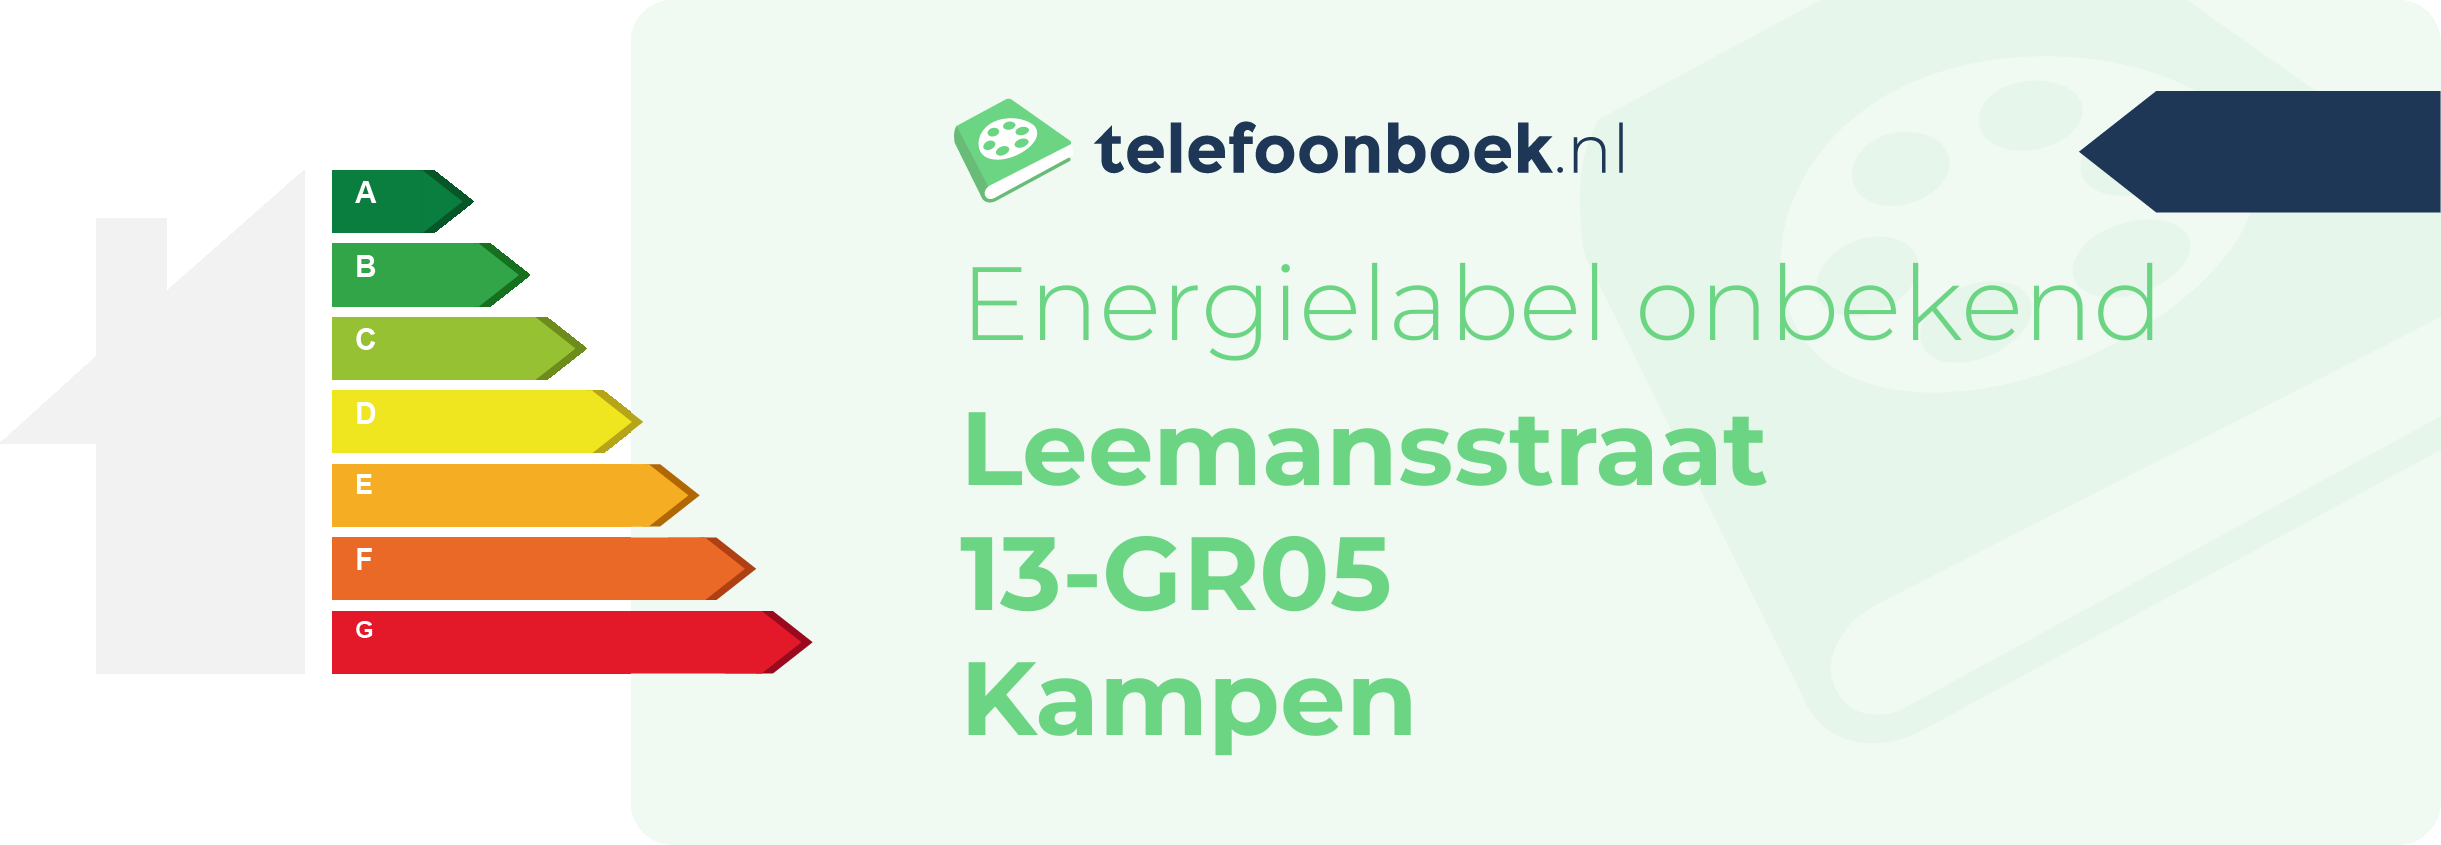 Energielabel Leemansstraat 13-GR05 Kampen